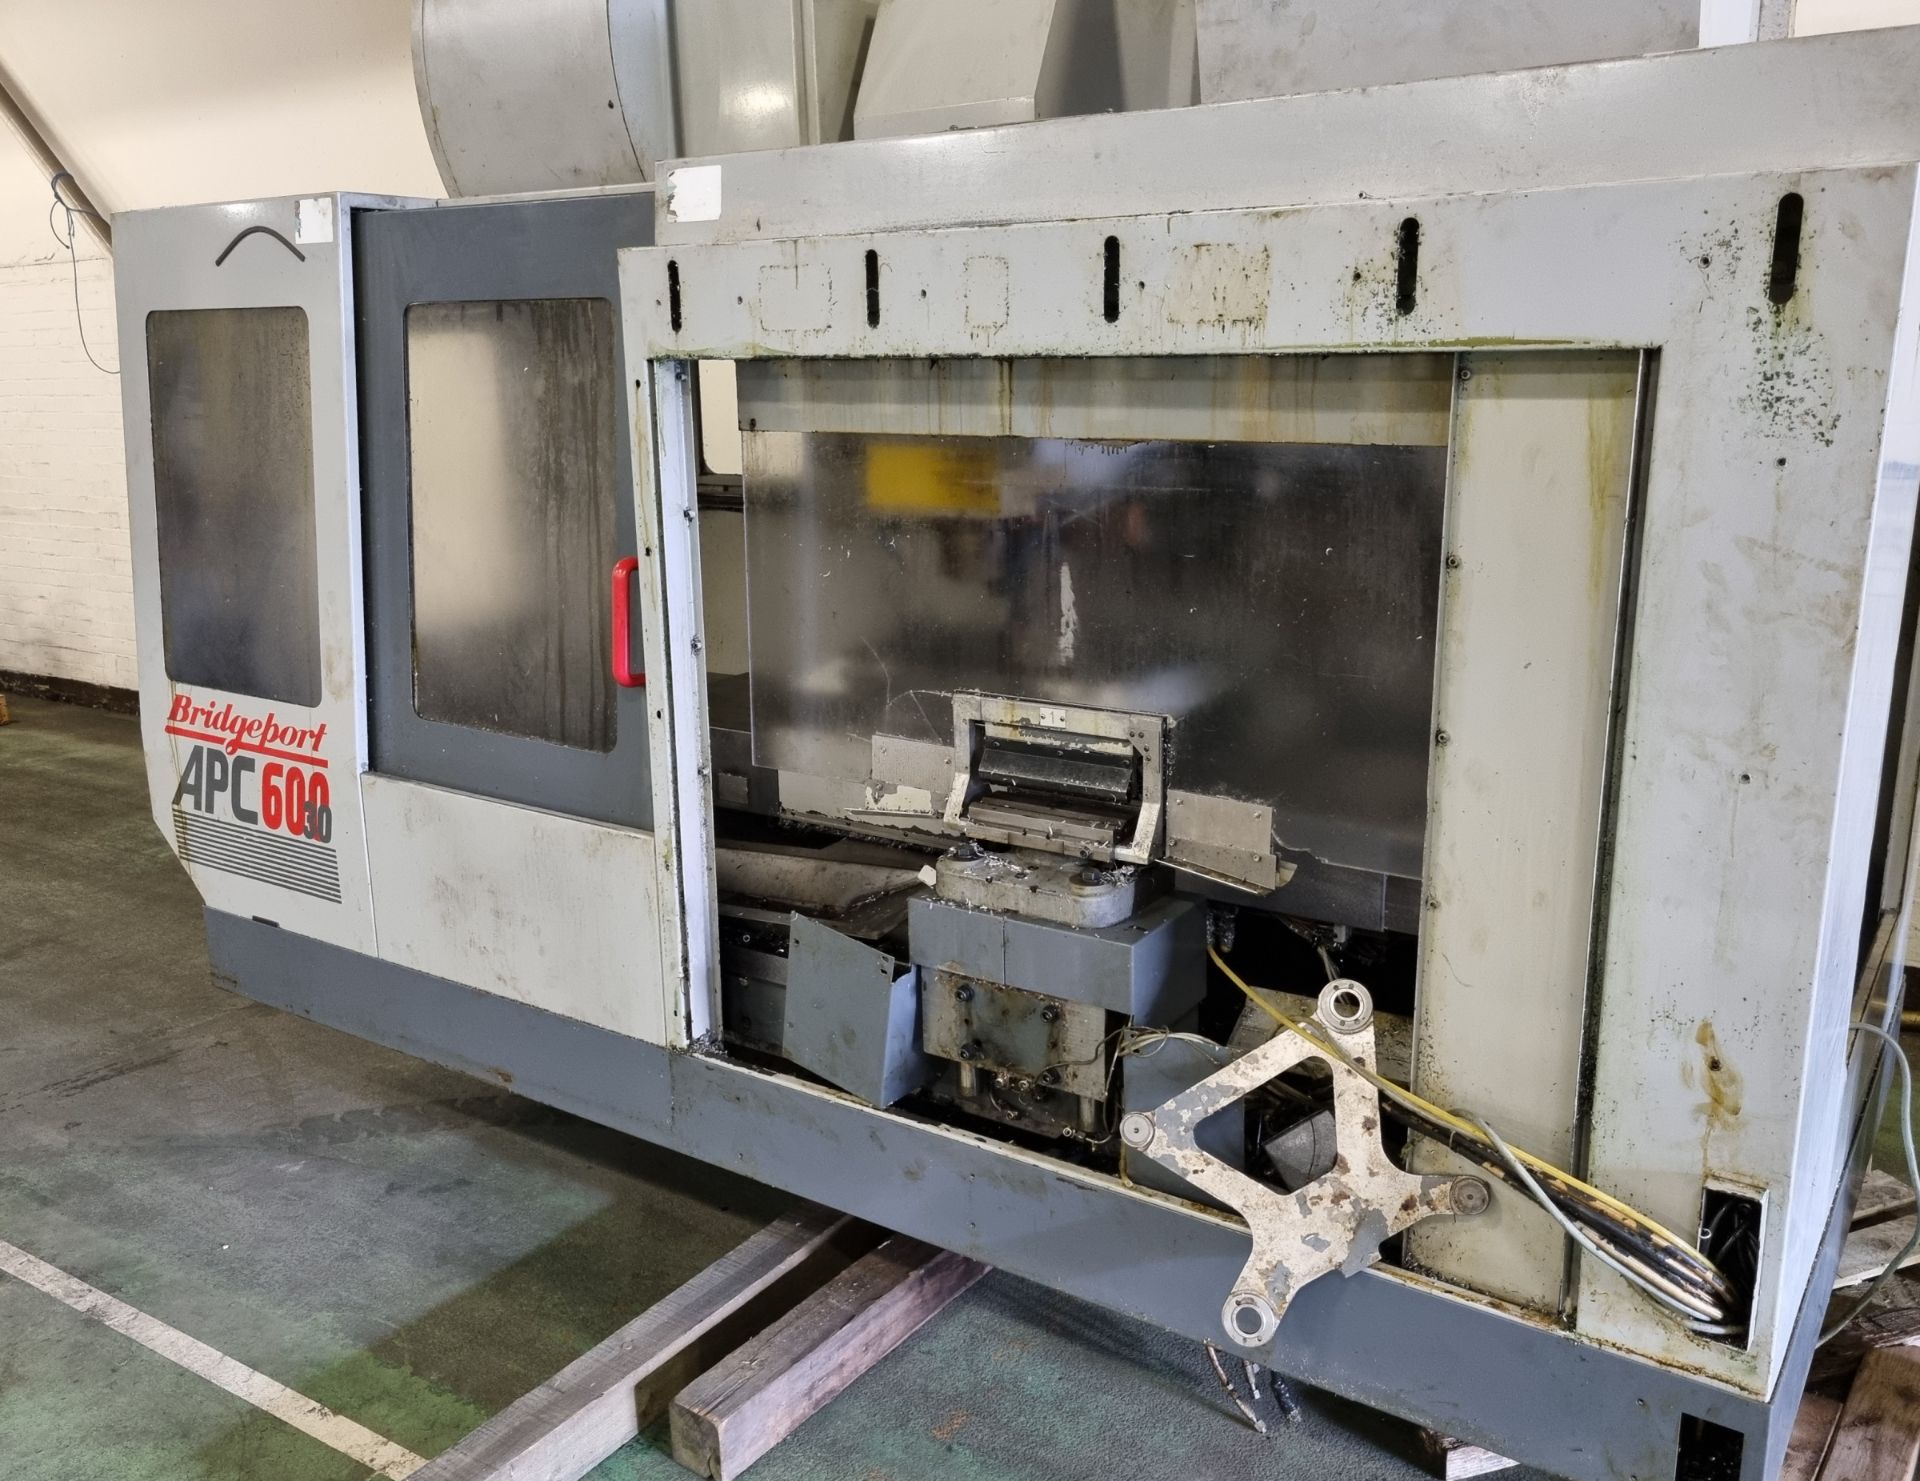 Bridgeport APC 600 CNC vertical machining centre with swarf conveyor, swarf skip, work bench - Bild 2 aus 42